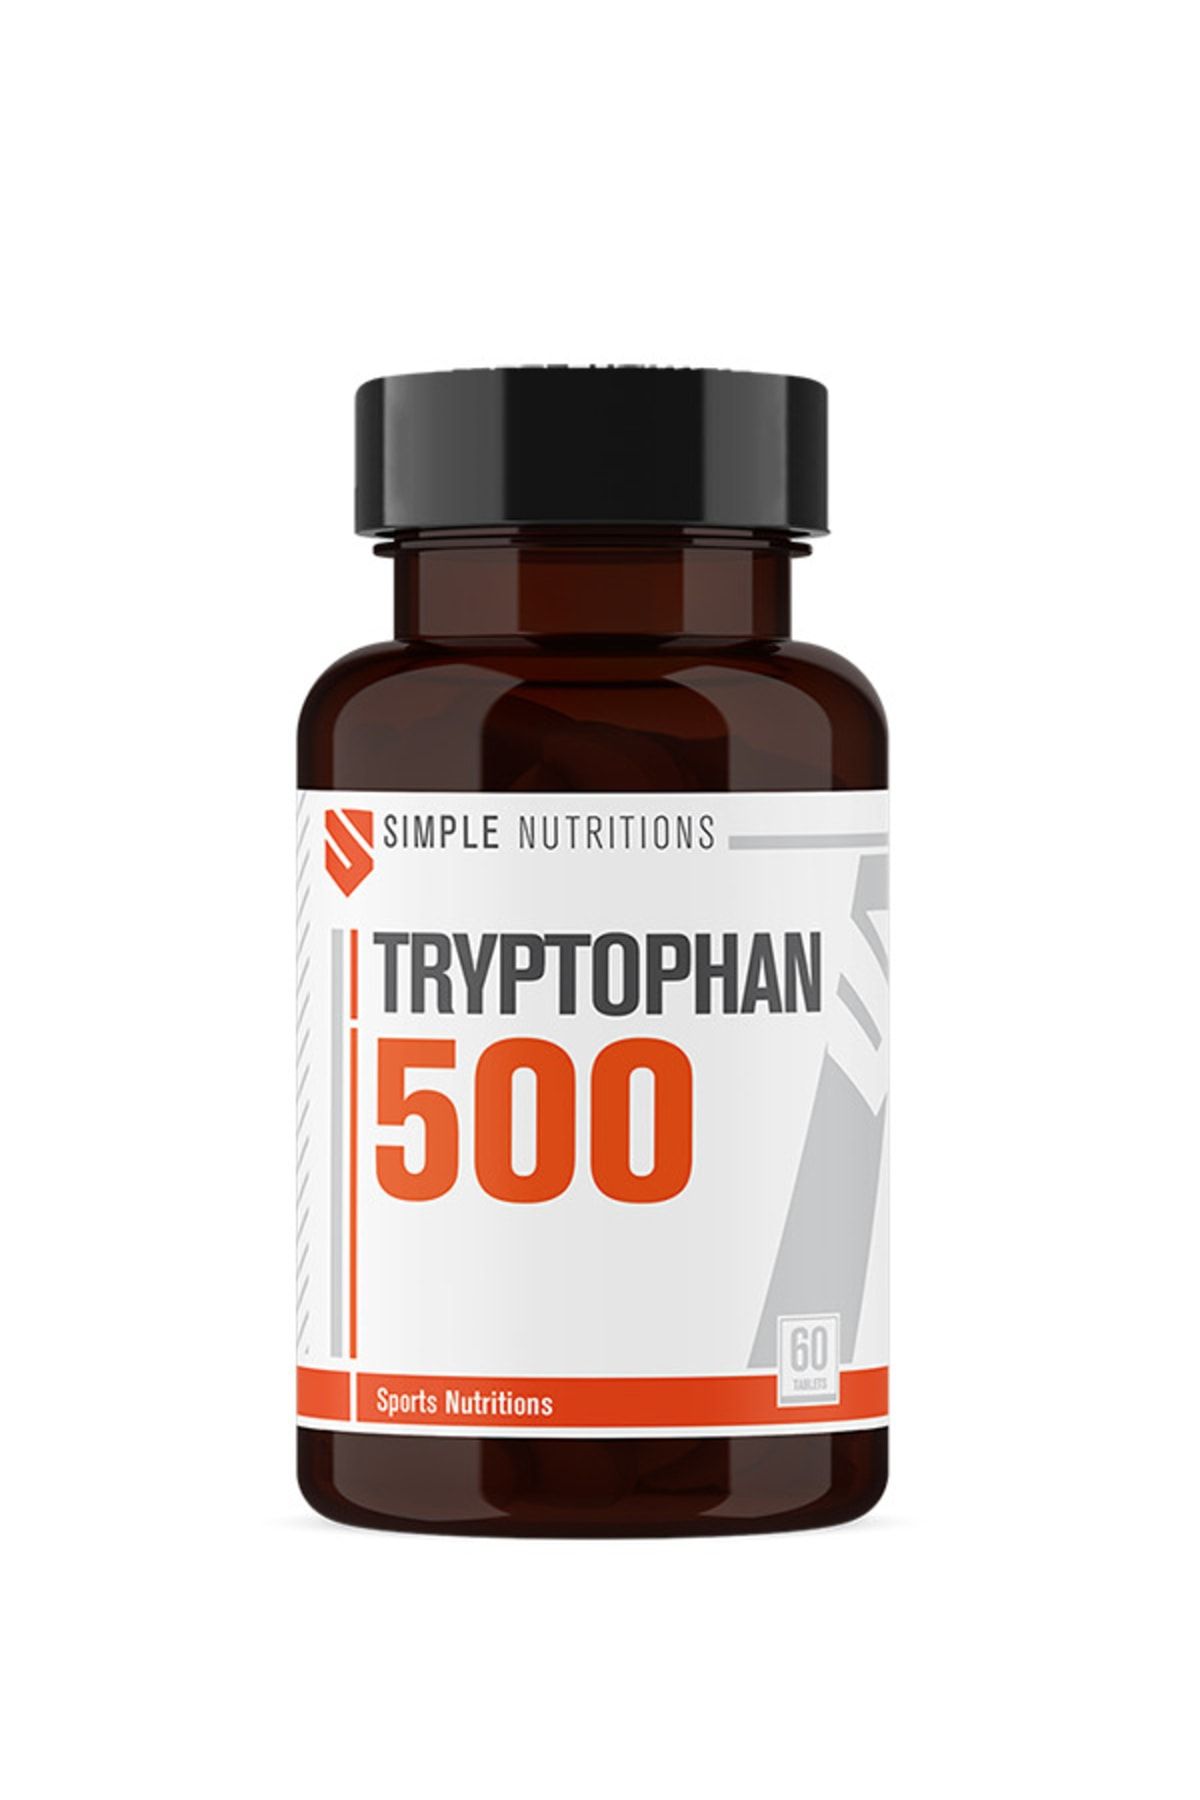 Simple Nutritions Tryptophan 500 Mg (TRİPTOFAN) 60 Tablet